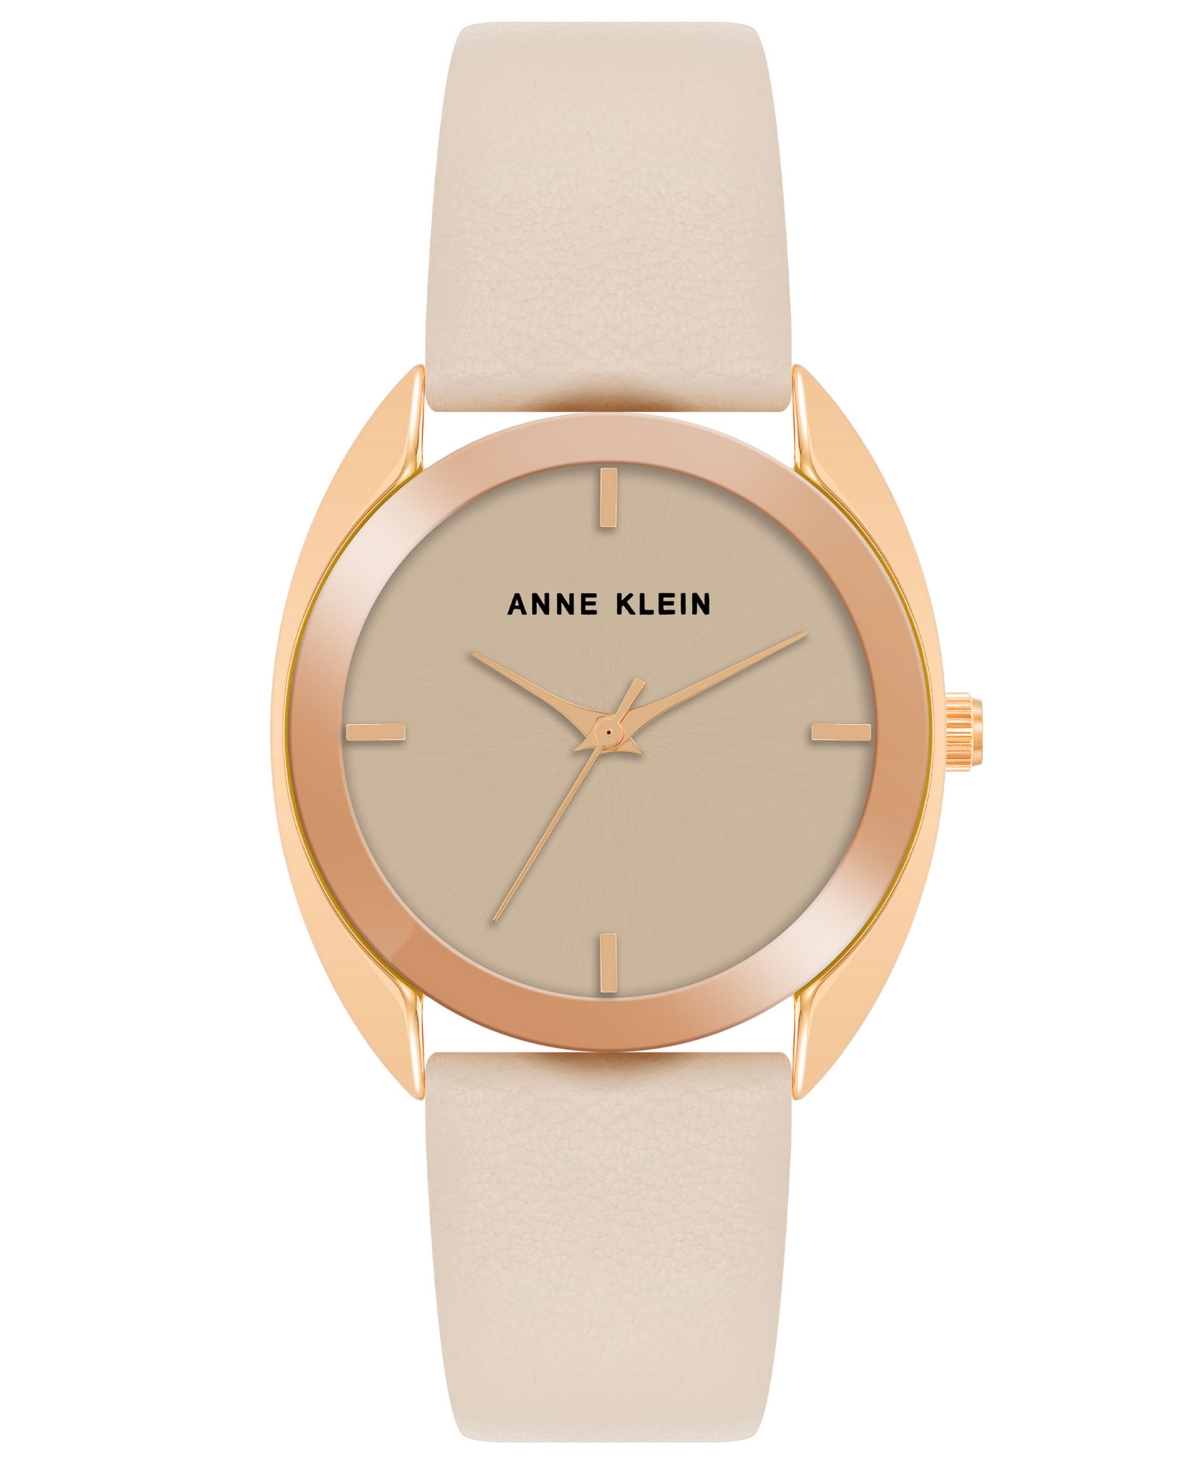 Anne Klein Women's Three Hand Quartz Blush Pink Genuine Leather Watch, 34mm In Rose Gold,blush Pink